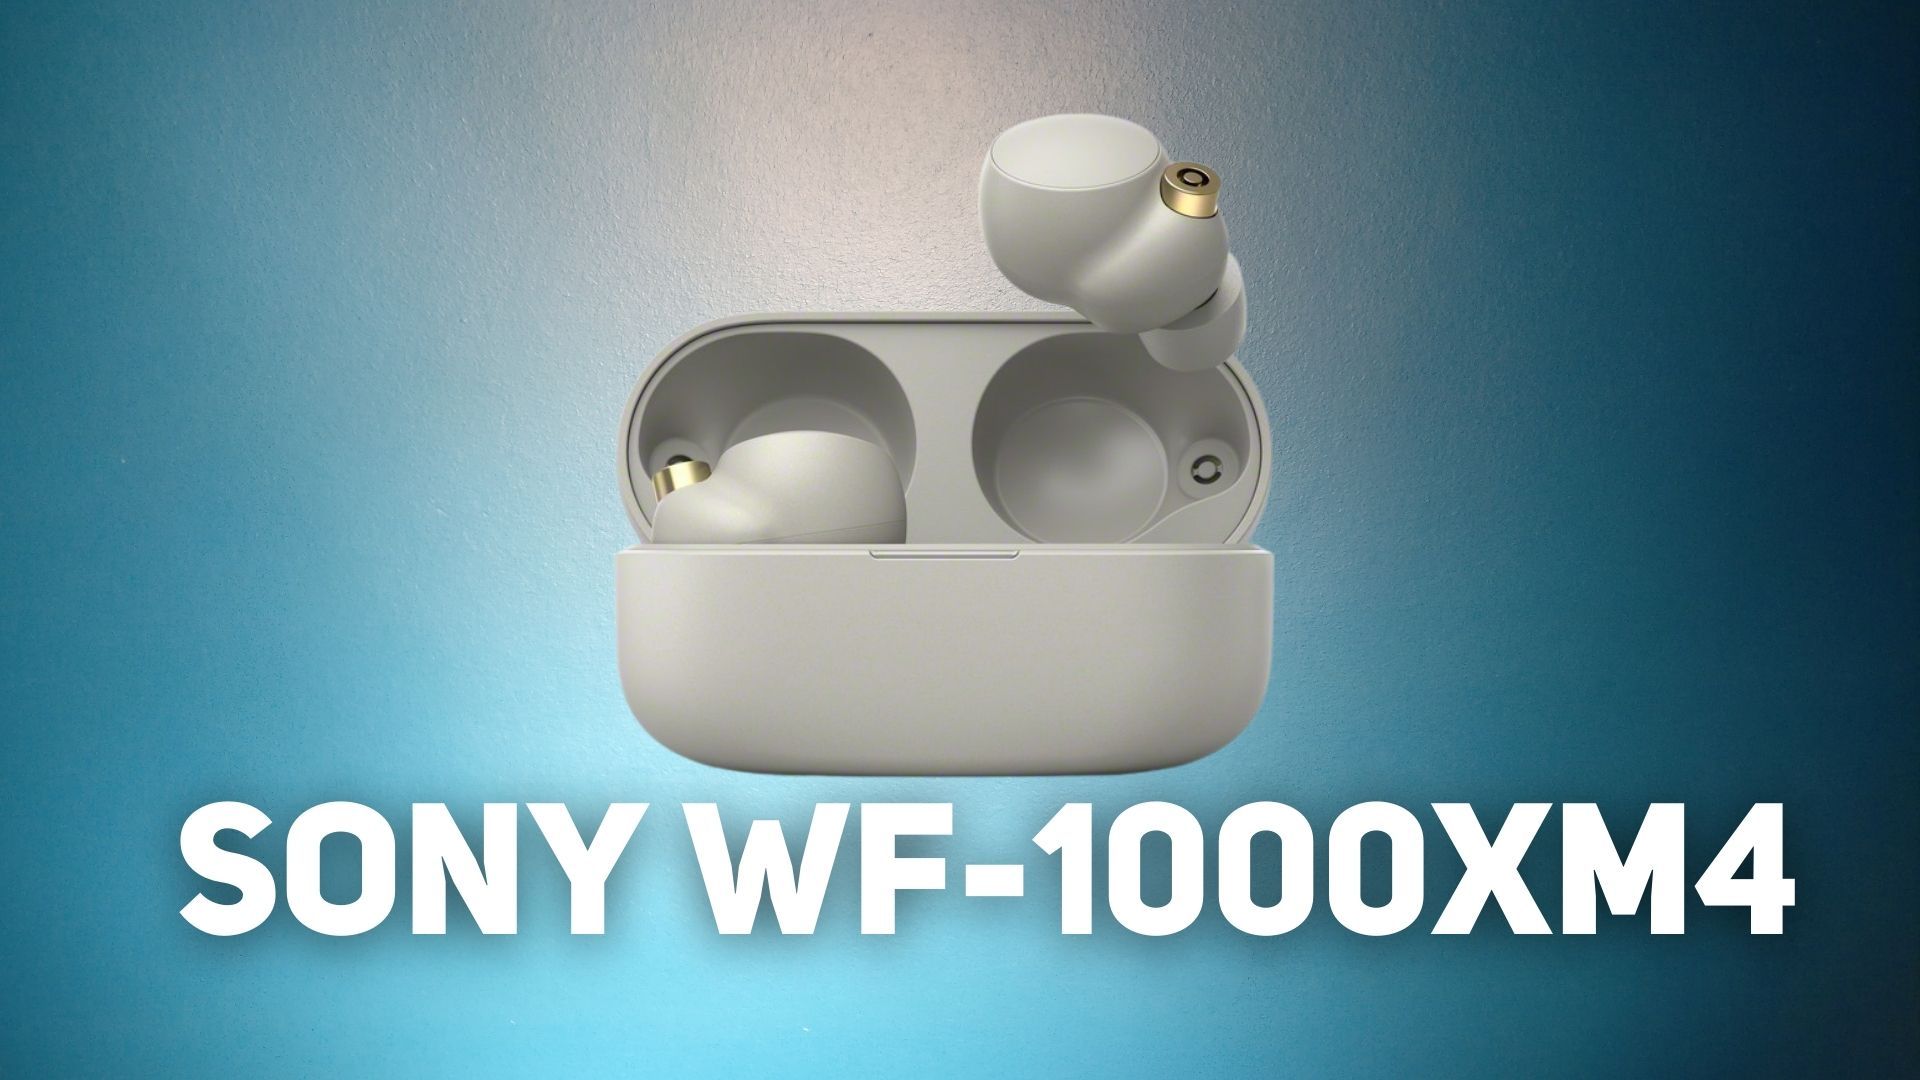 sony wf - Sony WF-1000XM4 sono i primi auricolari al mondo a supportare LDAC